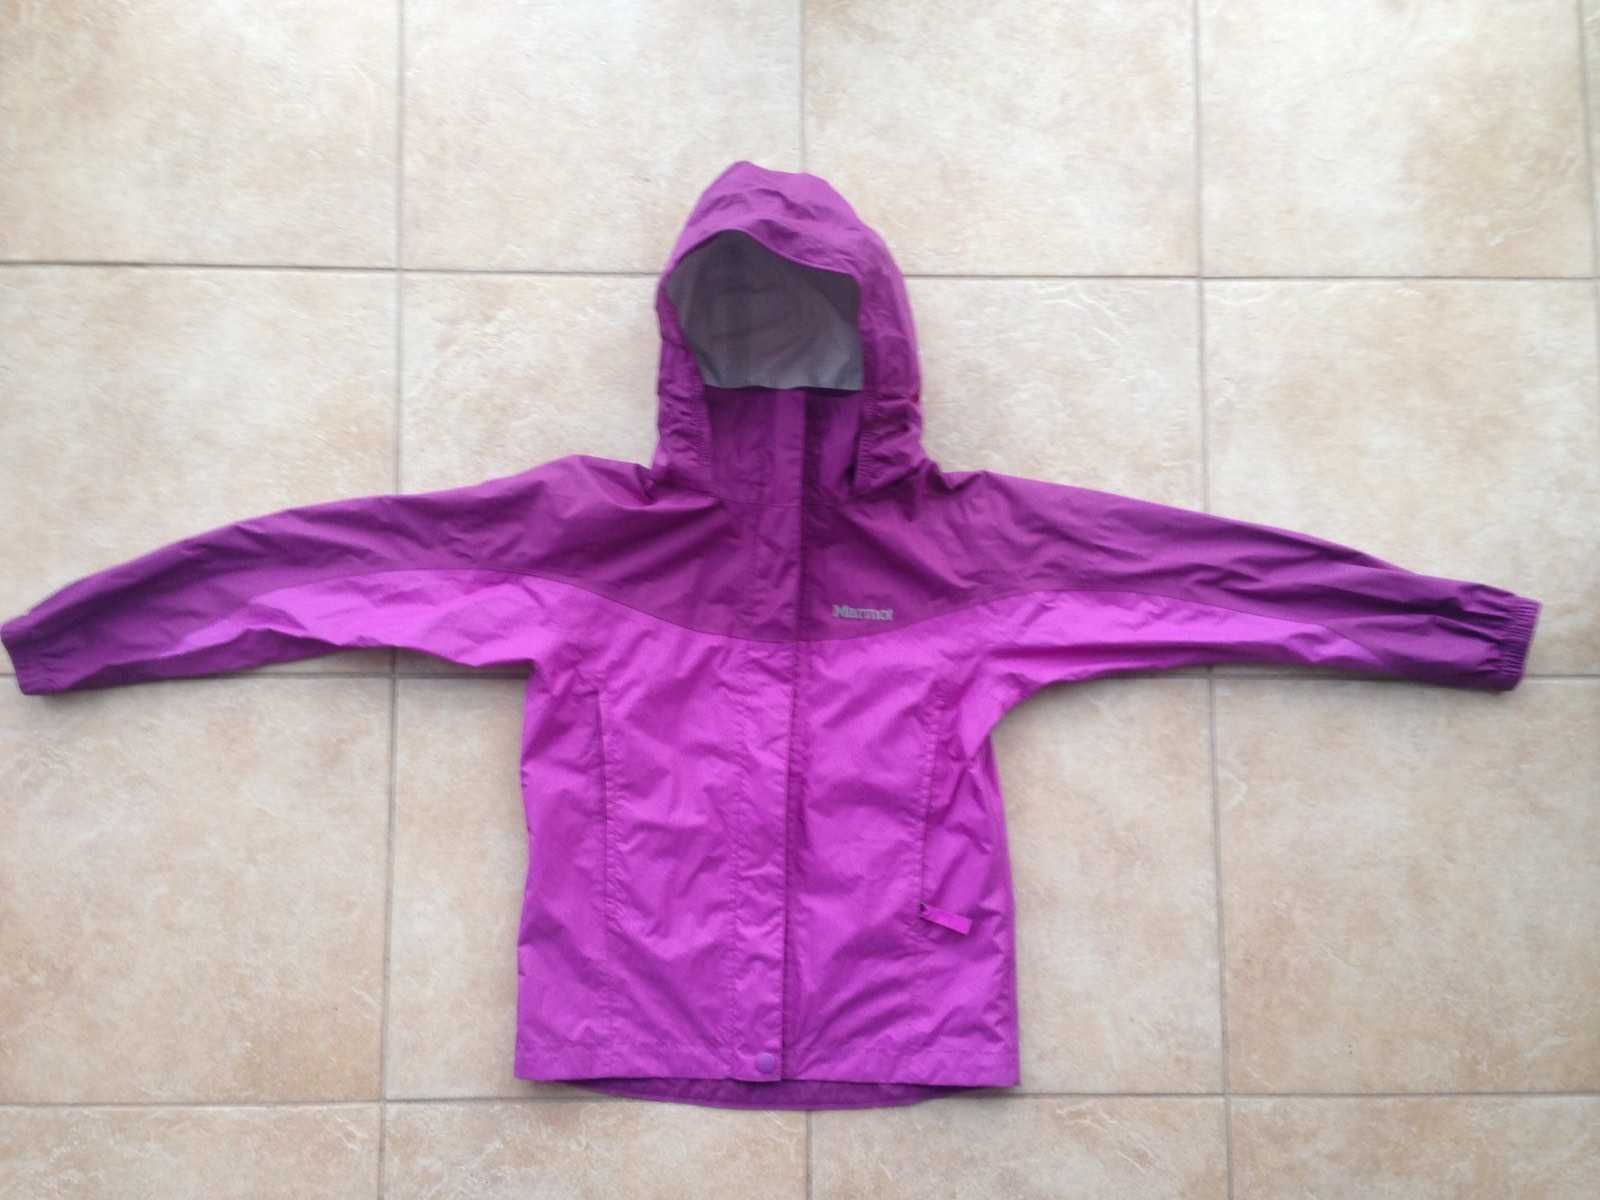 Мембранная курточка дождевик-ветровка Marmot PreCip для девочки. Новая